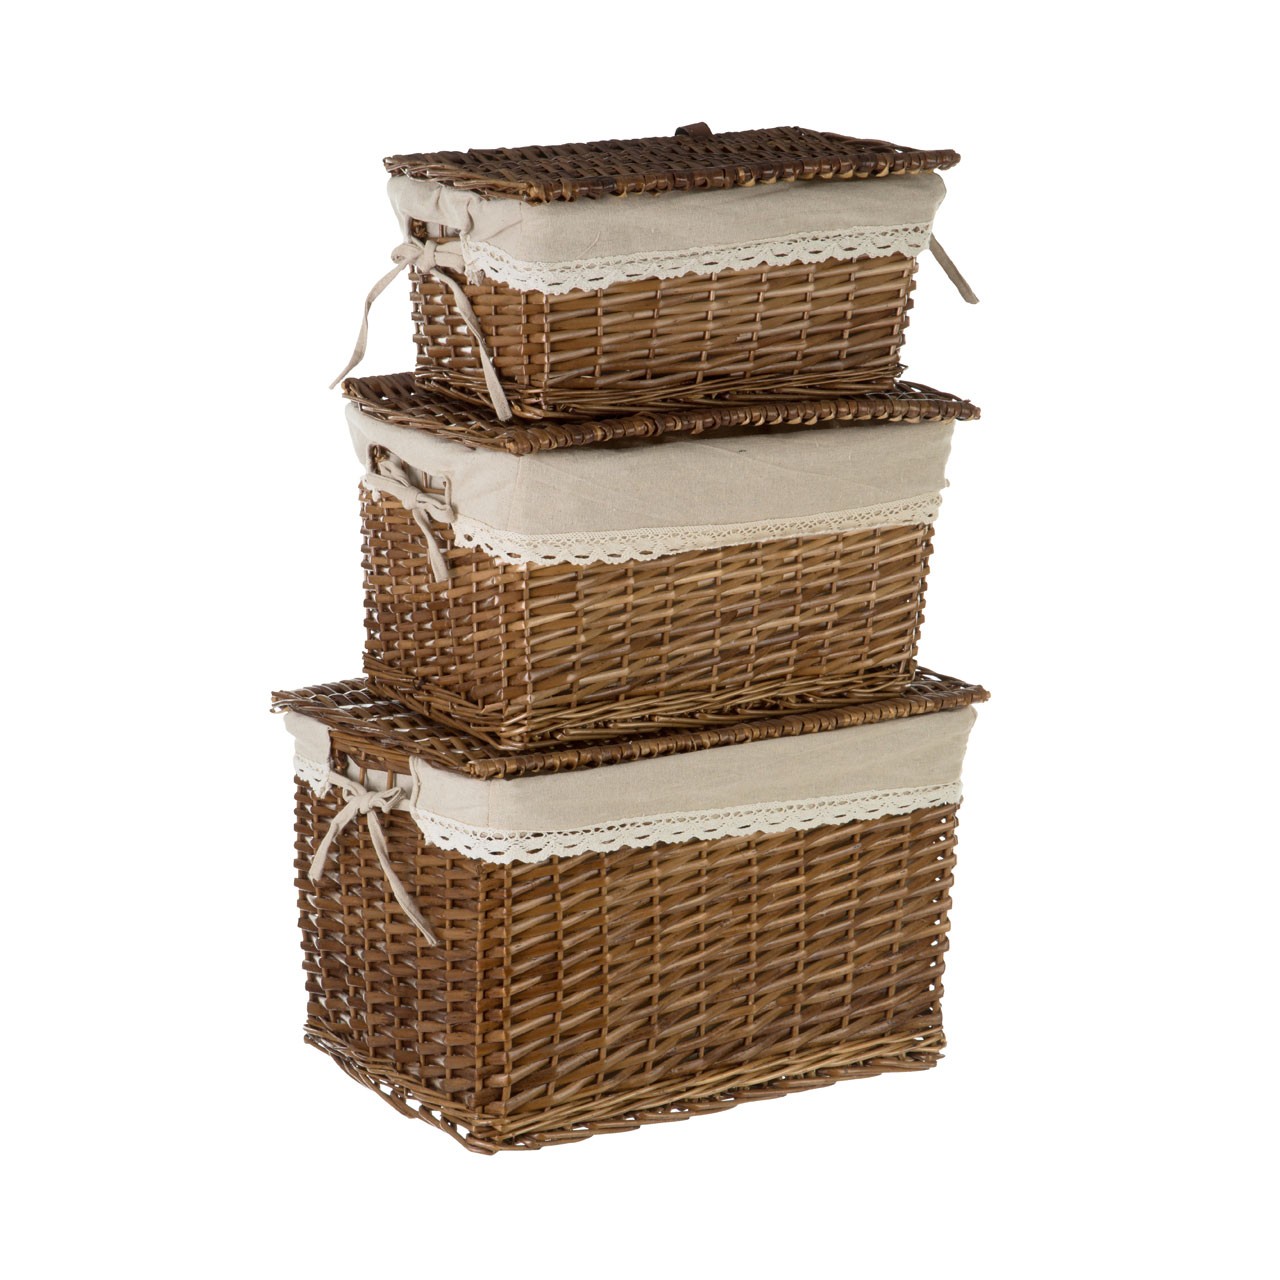 Prime Furnishing Rectangular Willow Baskets, Natural - Set of 3